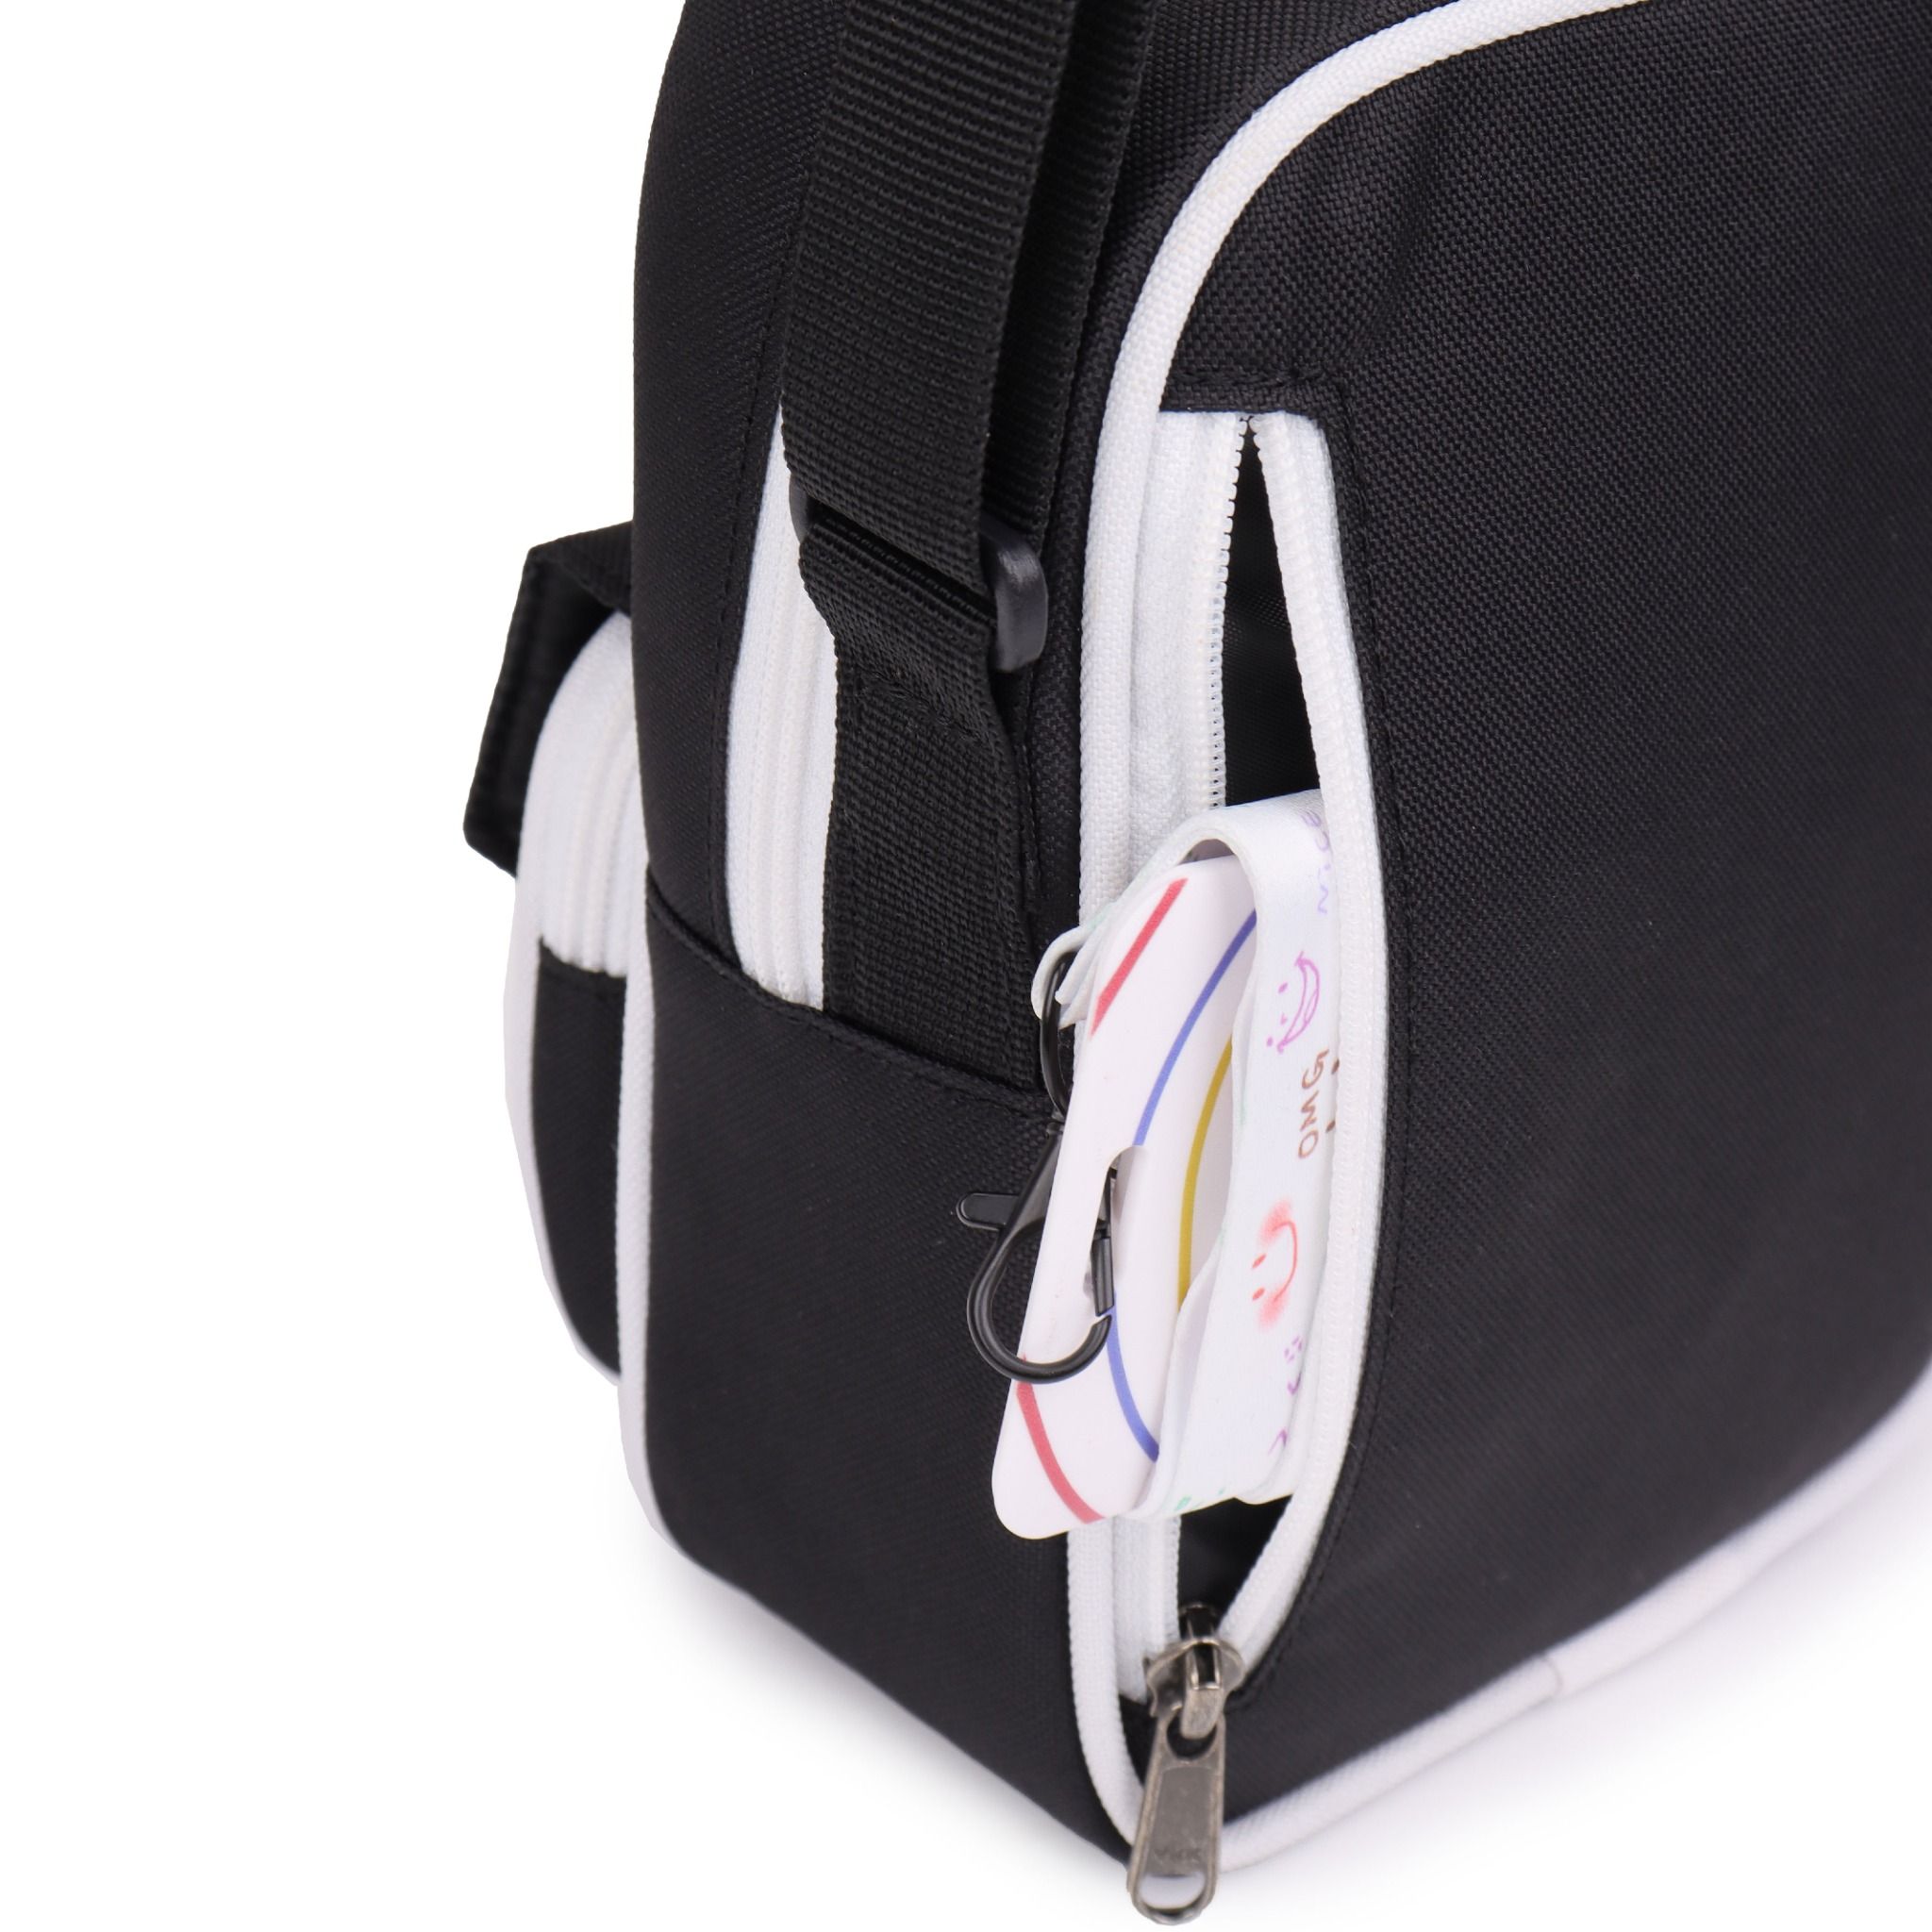  Scarab Daypack Shoulder Bag - Black White 